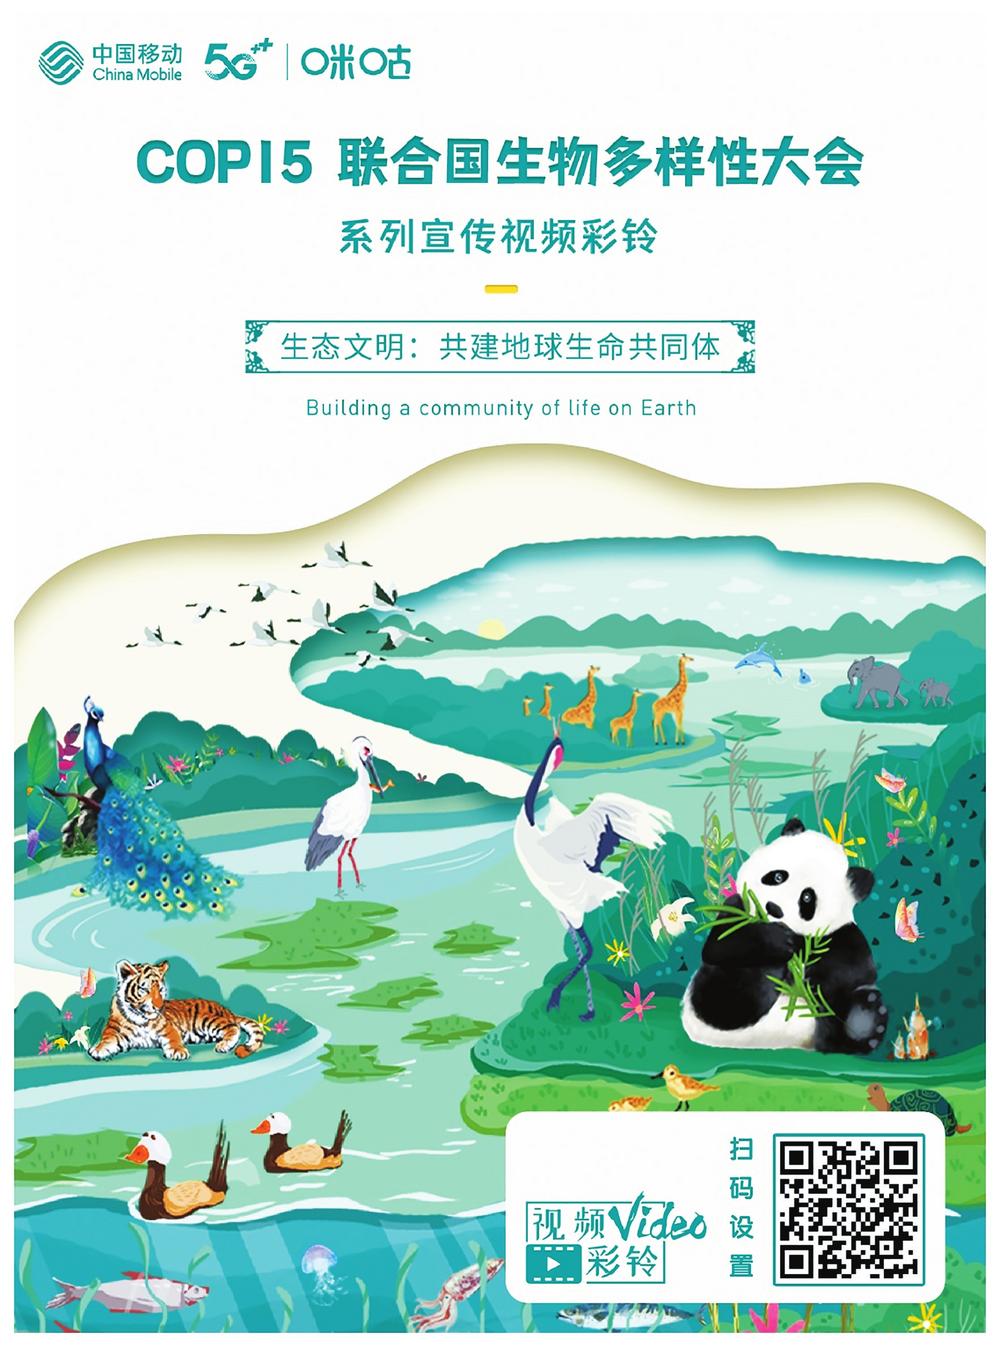 记录万物生灵 传递生态保护——中国移动云南公司邀你玩转手机视频彩铃